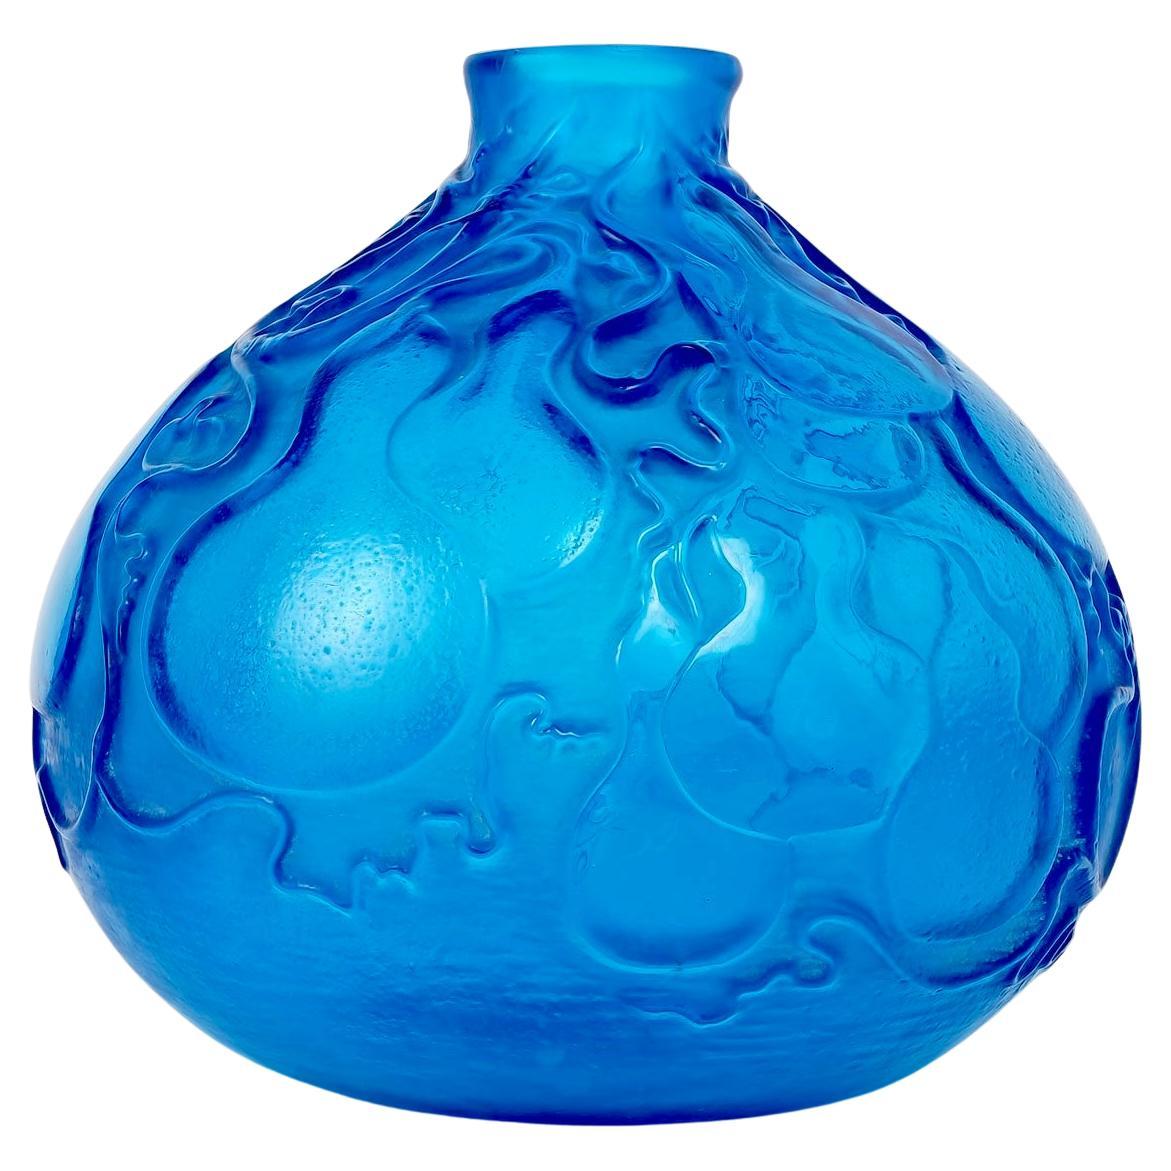 1914 René Lalique - Vase Courges Electric Blue Glass